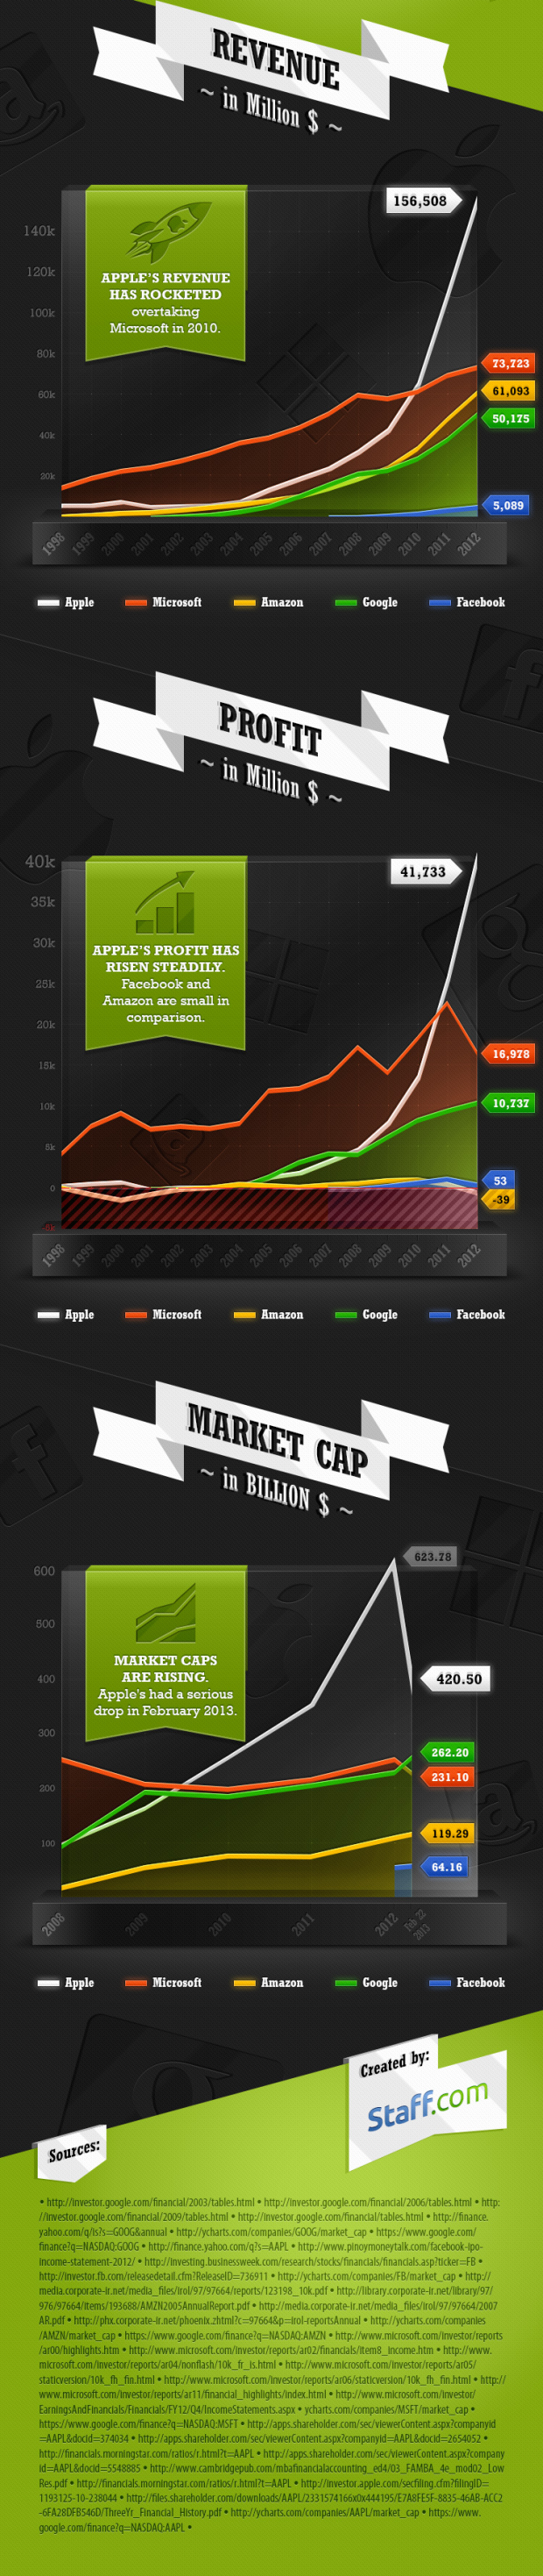 infograph_revenue-profit-tech-giants-b